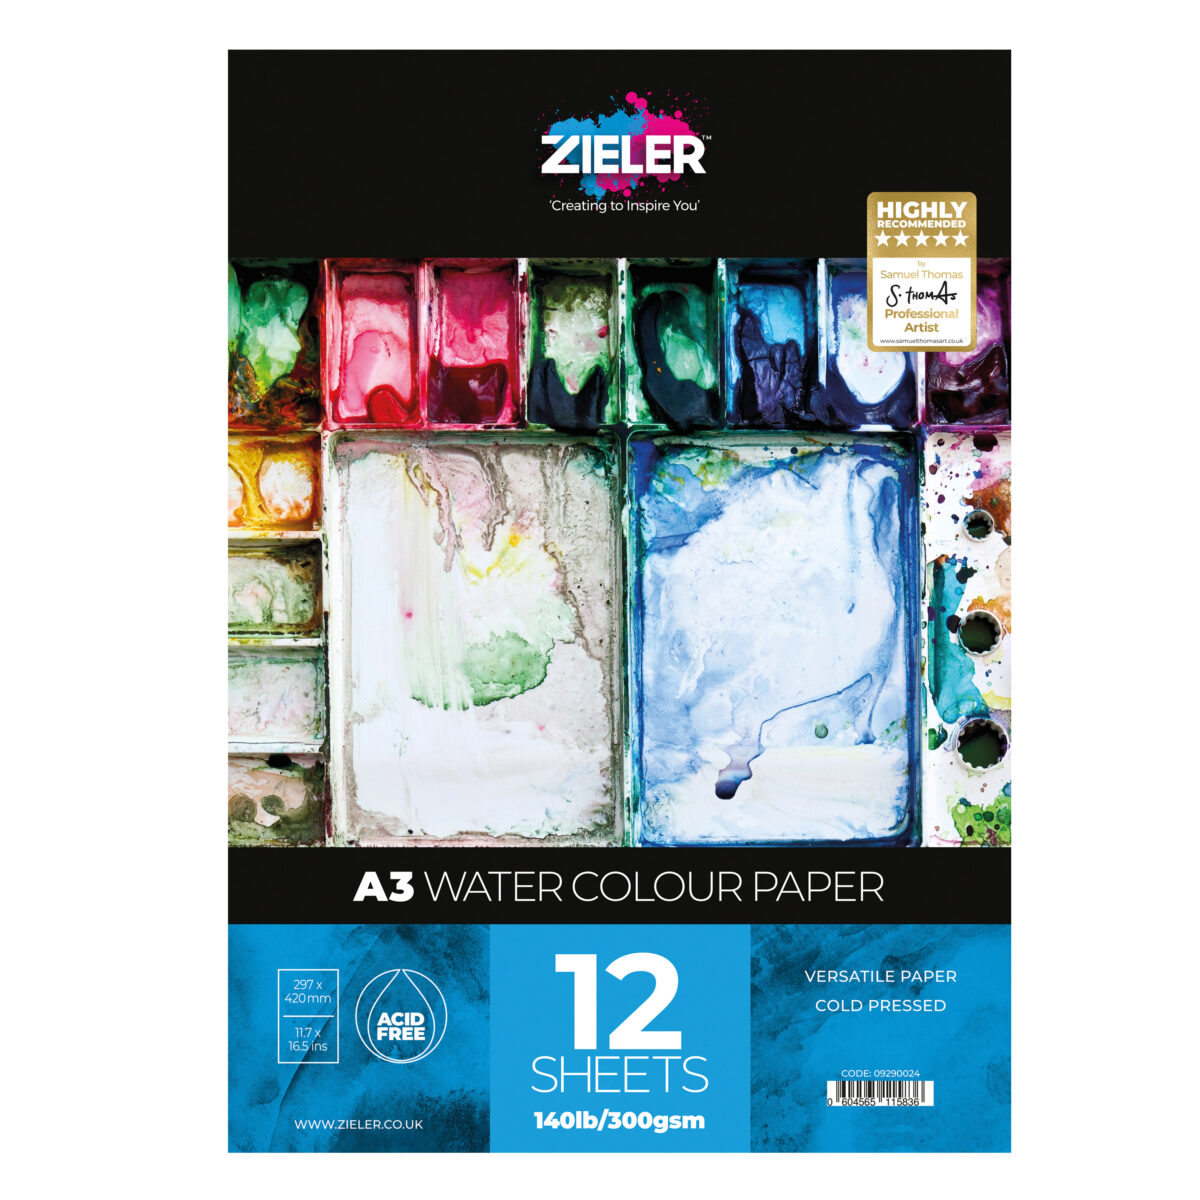 A3 Watercolour Pad - Zieler Art Supplies